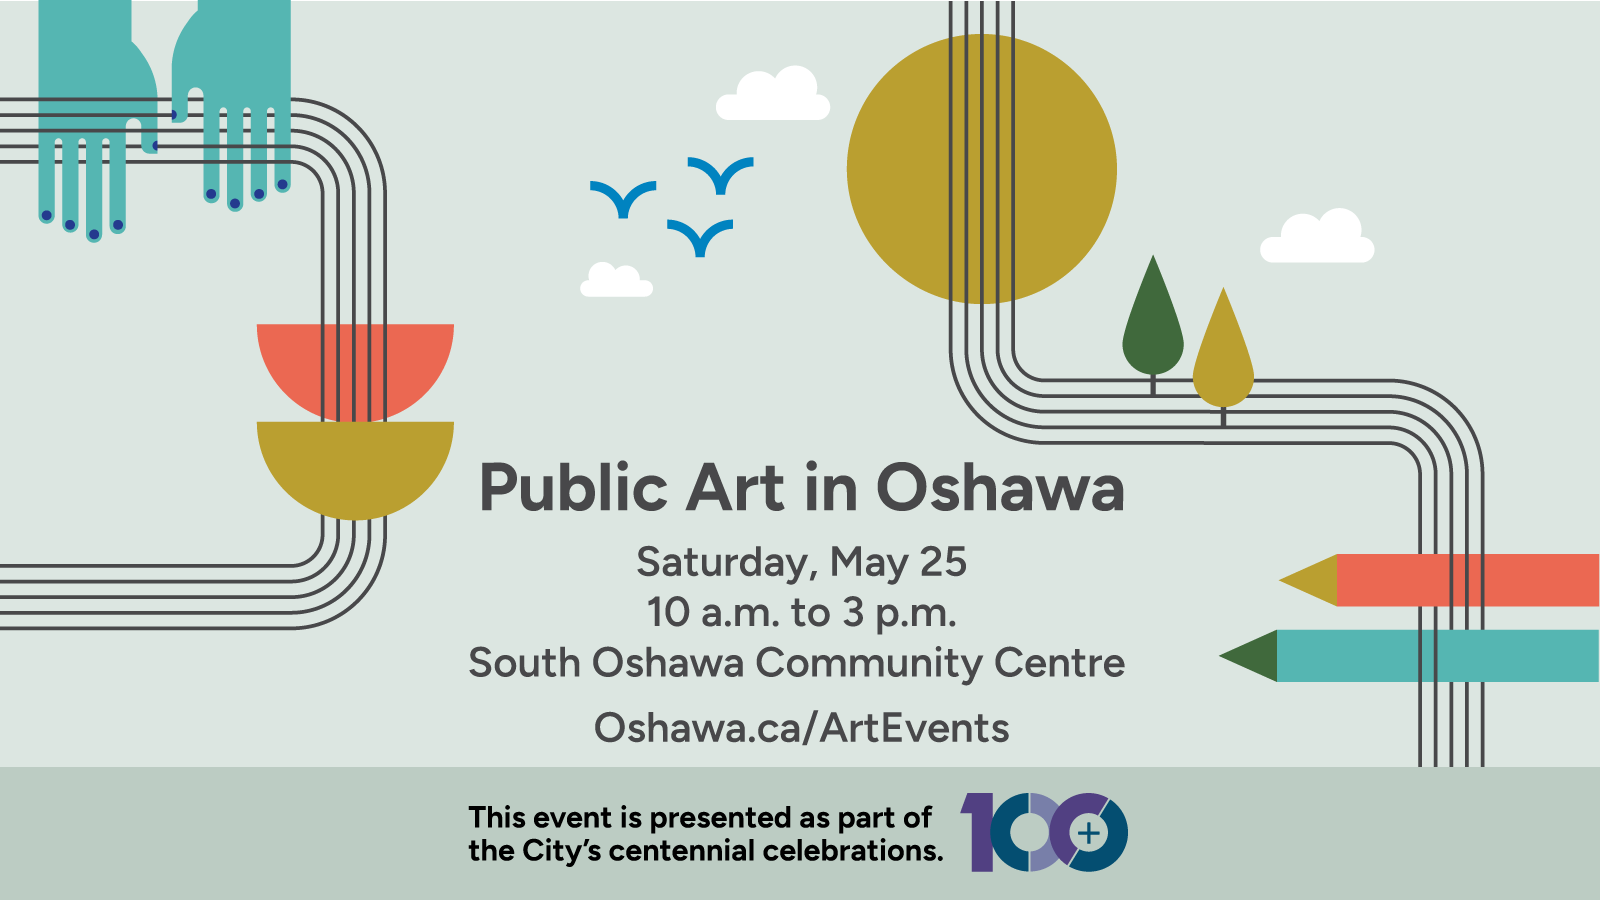 Public Art in Oshawa, Saturday, May 25 at South Oshawa Community Centre